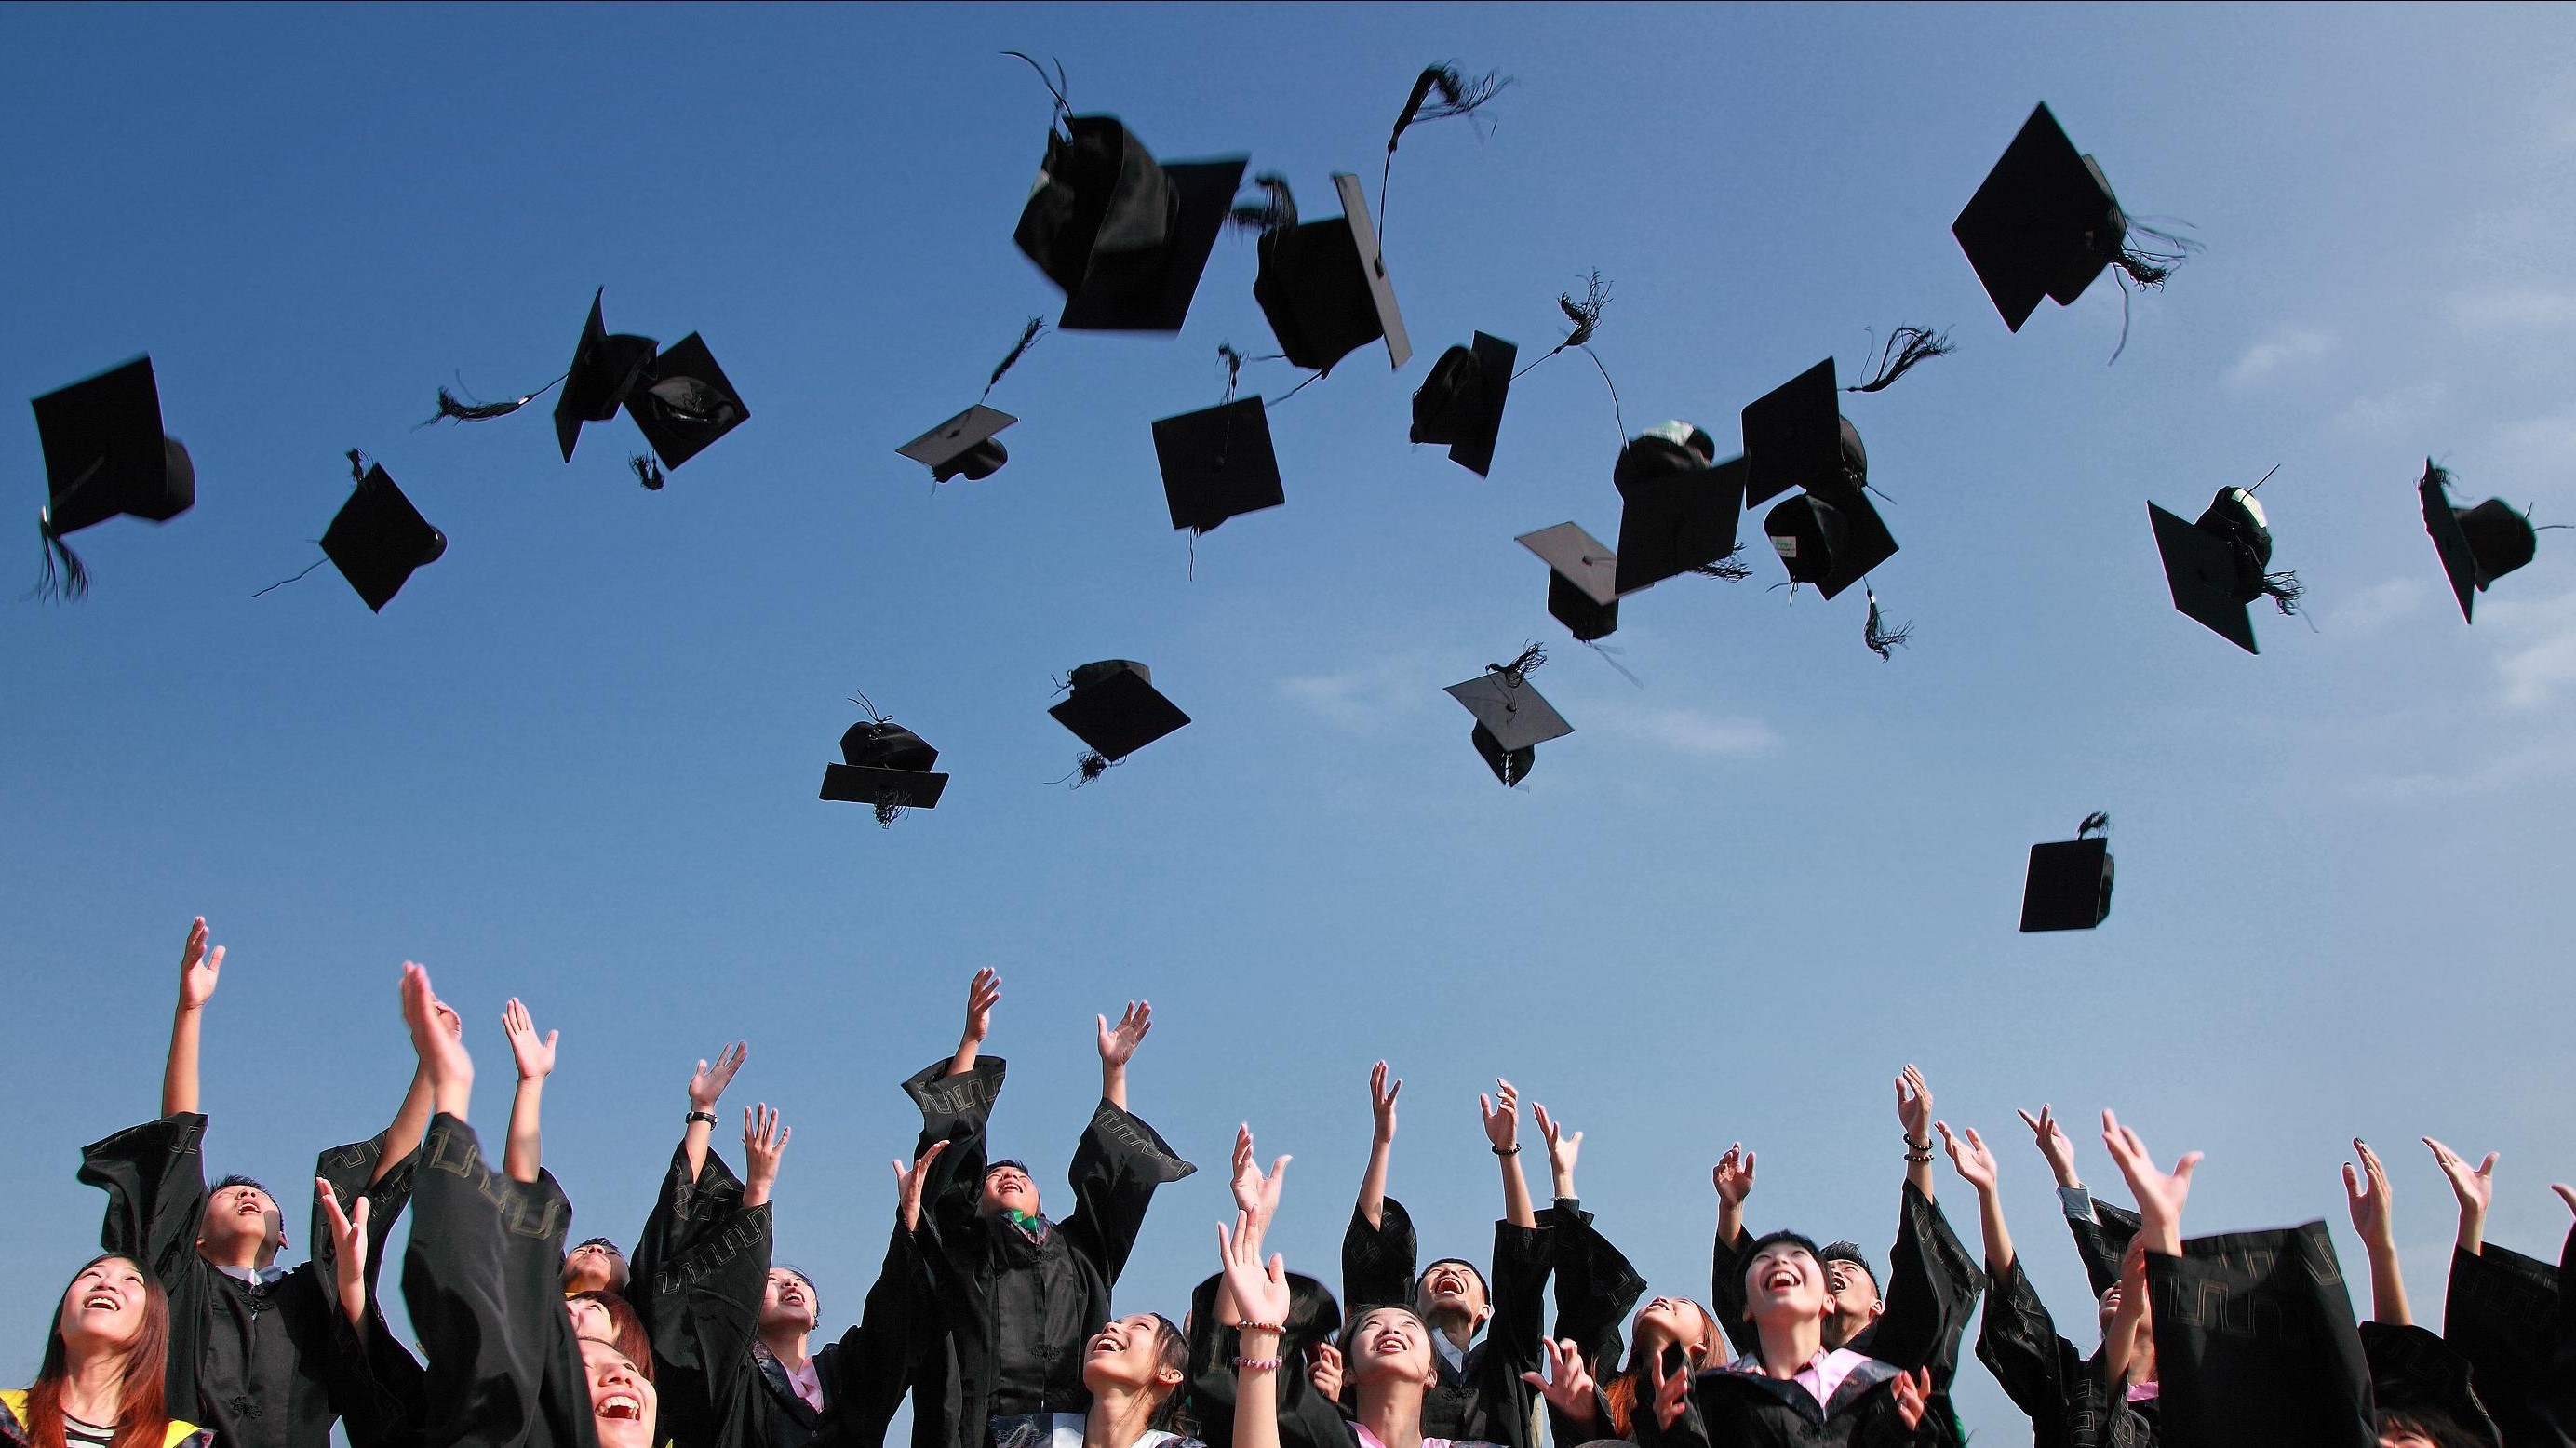 Graduates tossing caps in the air